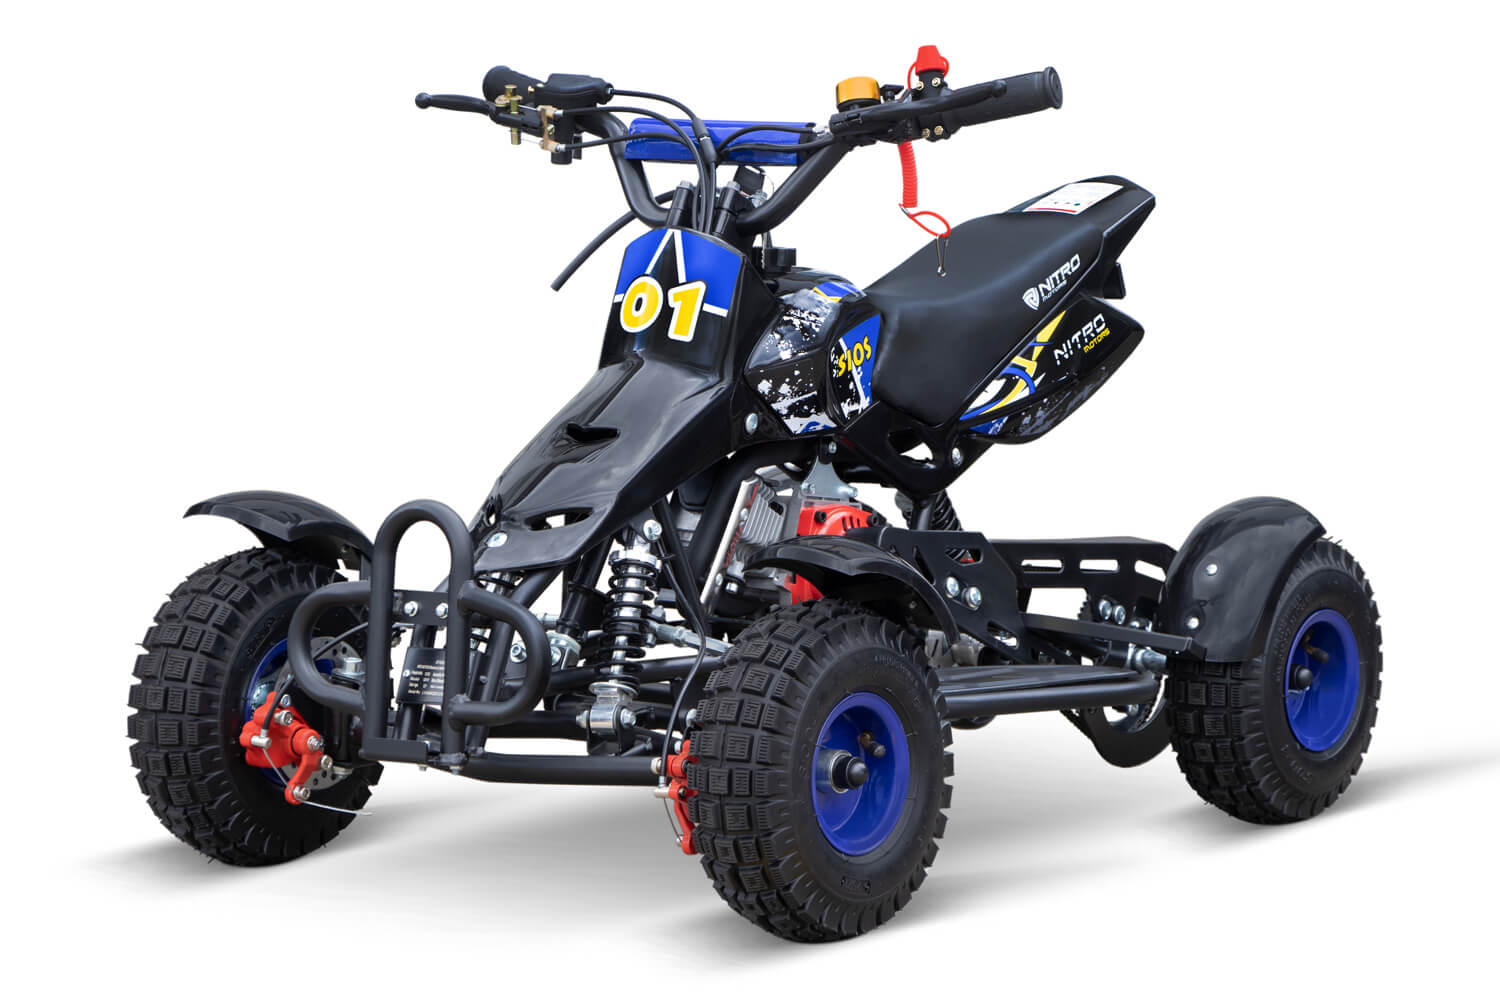 Robinet d'essence Pocket Bike Quad Mini Moto ATV 49 50cc enfant